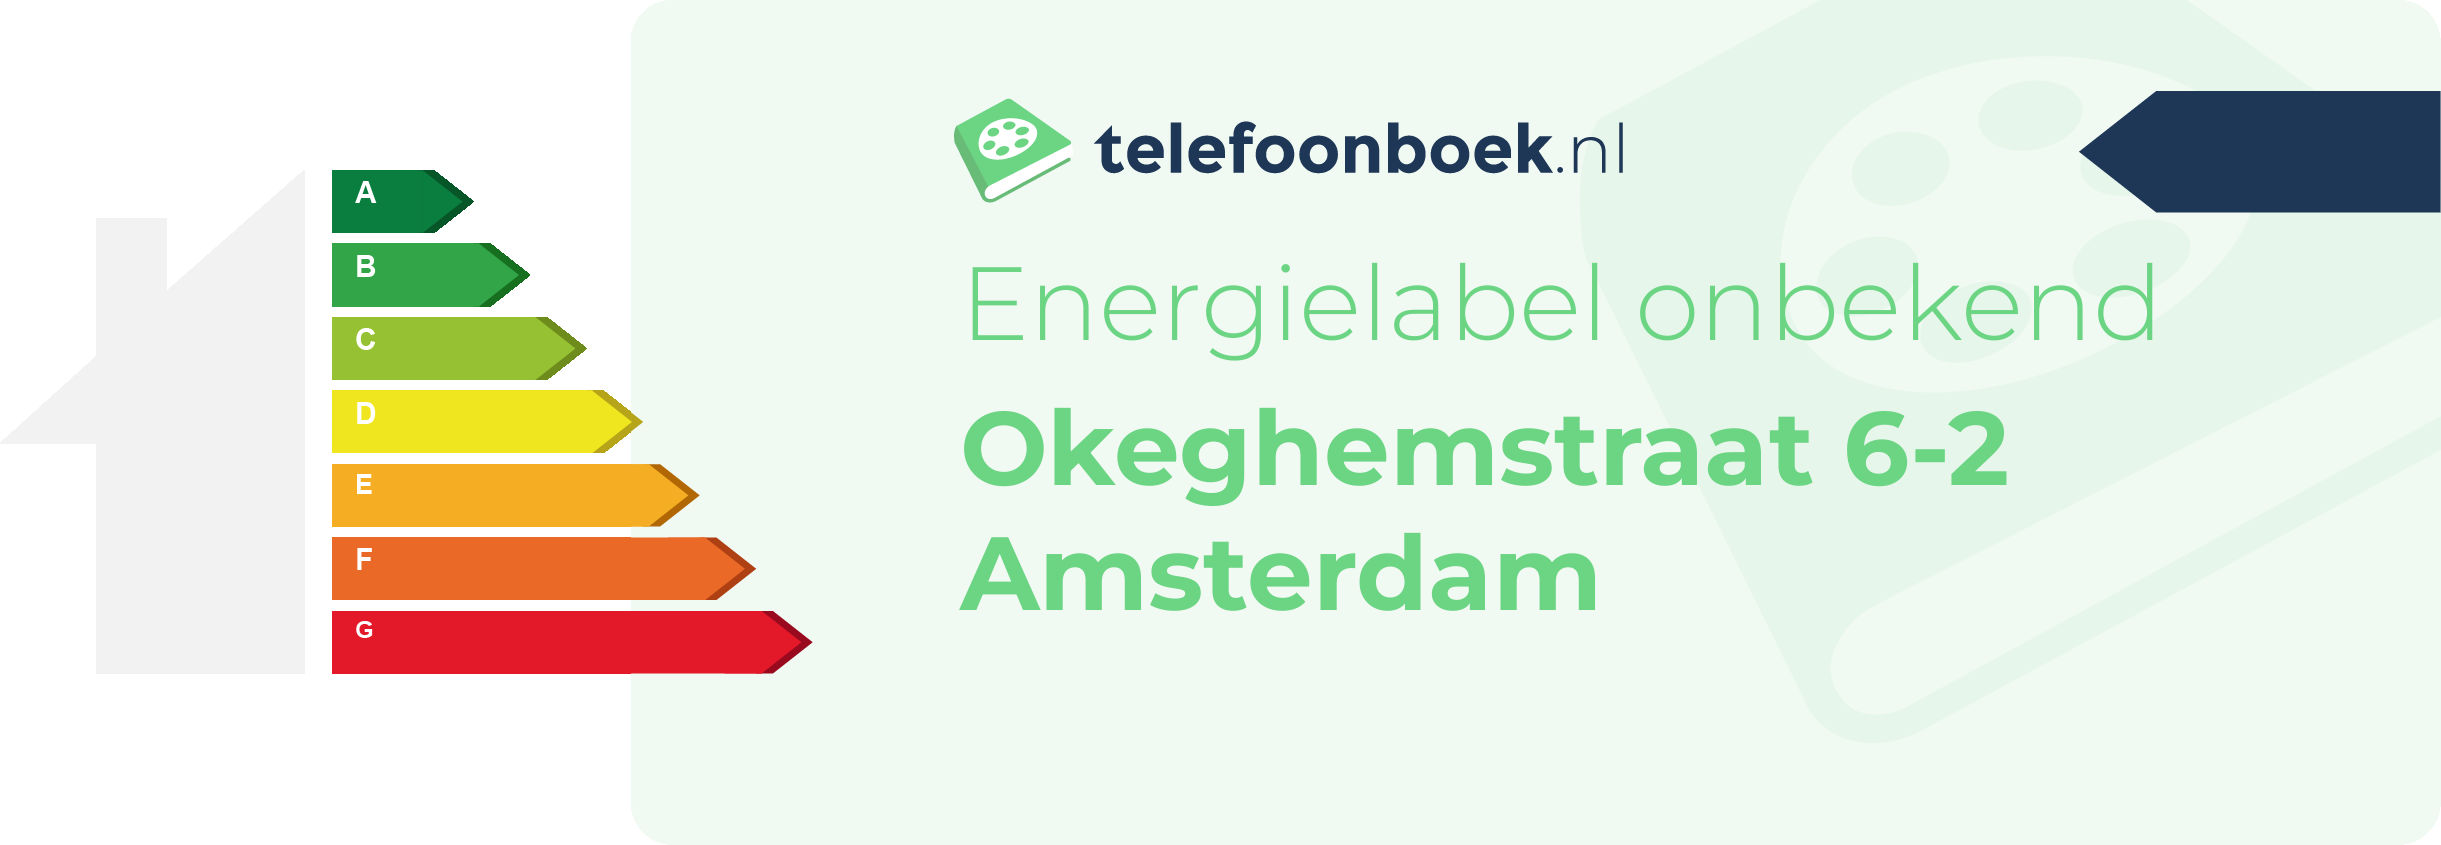 Energielabel Okeghemstraat 6-2 Amsterdam